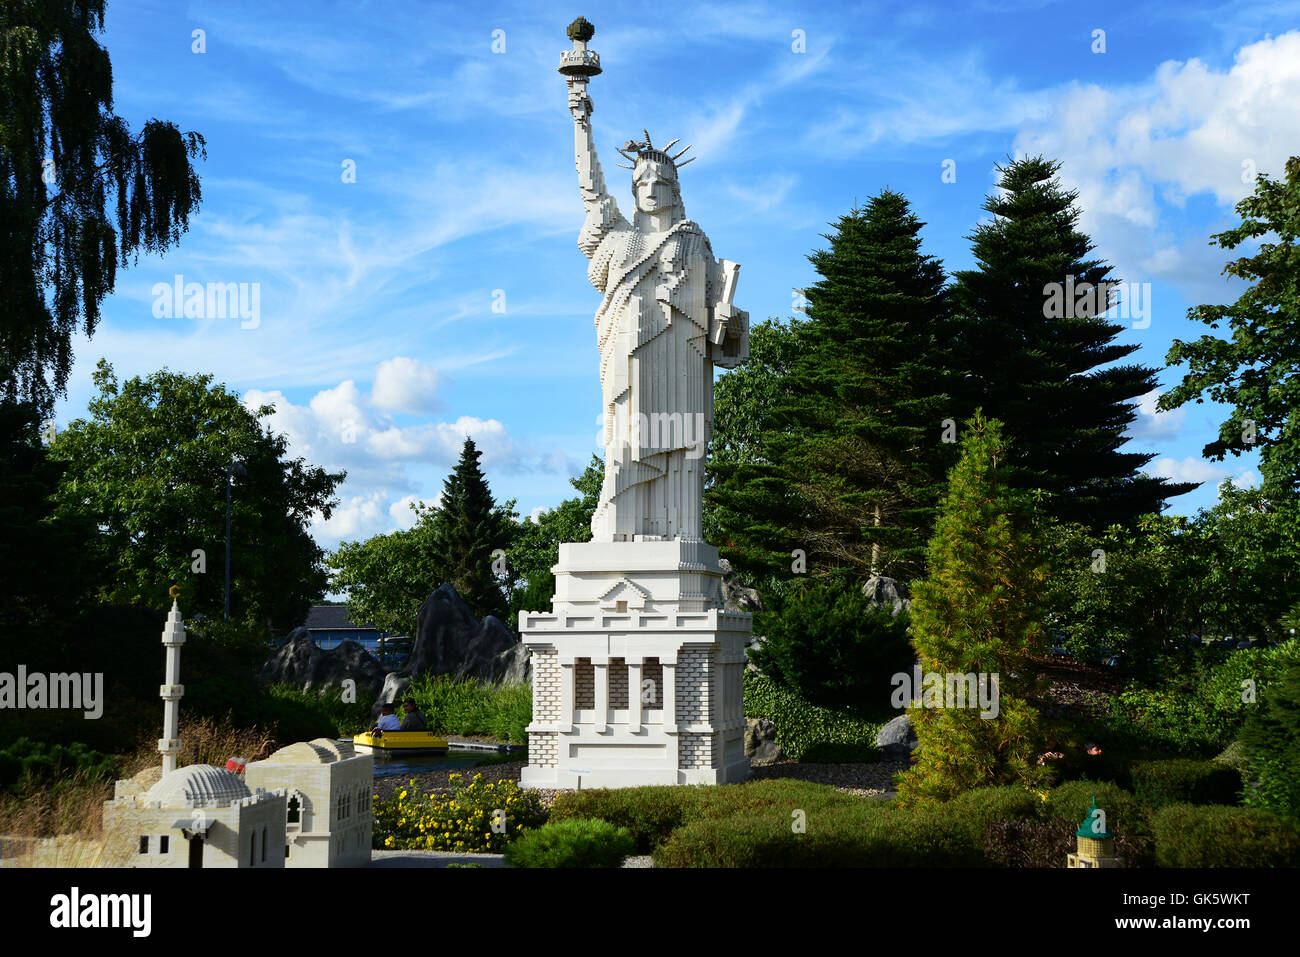 la statua della libertà ricostruita con mattoncini lego - Immagine di  LEGOLAND Billund - Tripadvisor